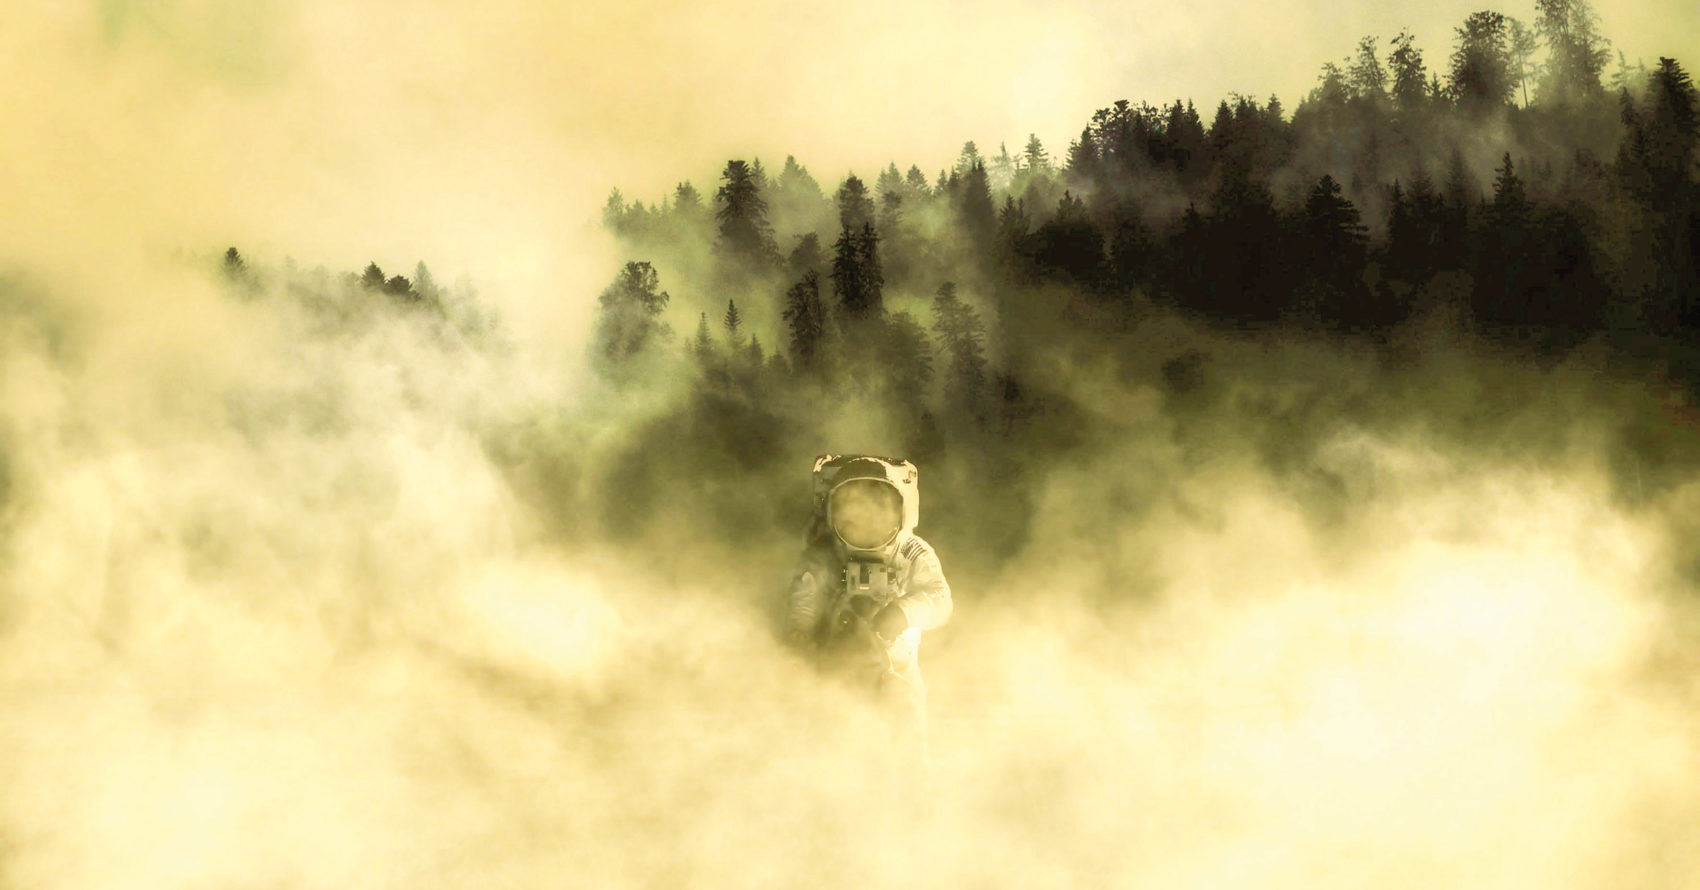 visuel d'un astronaute dans une foret de pin sous le brouillard